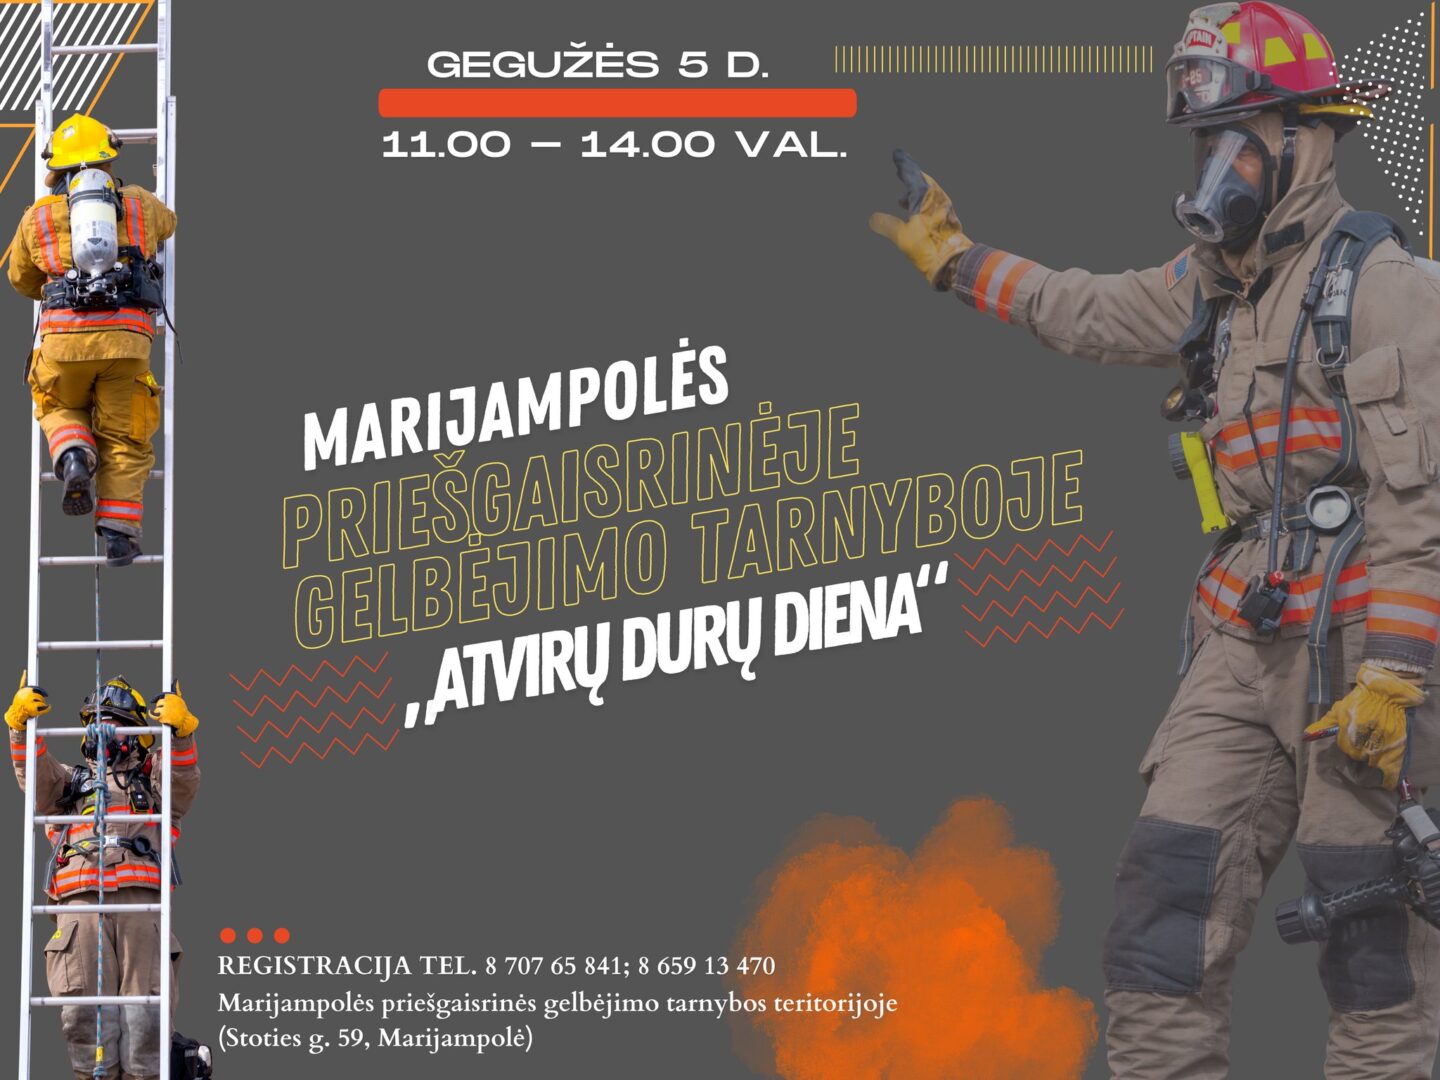 Marijampolės priešgaisrinės gelbėjimo tarnybos atvirų durų diena